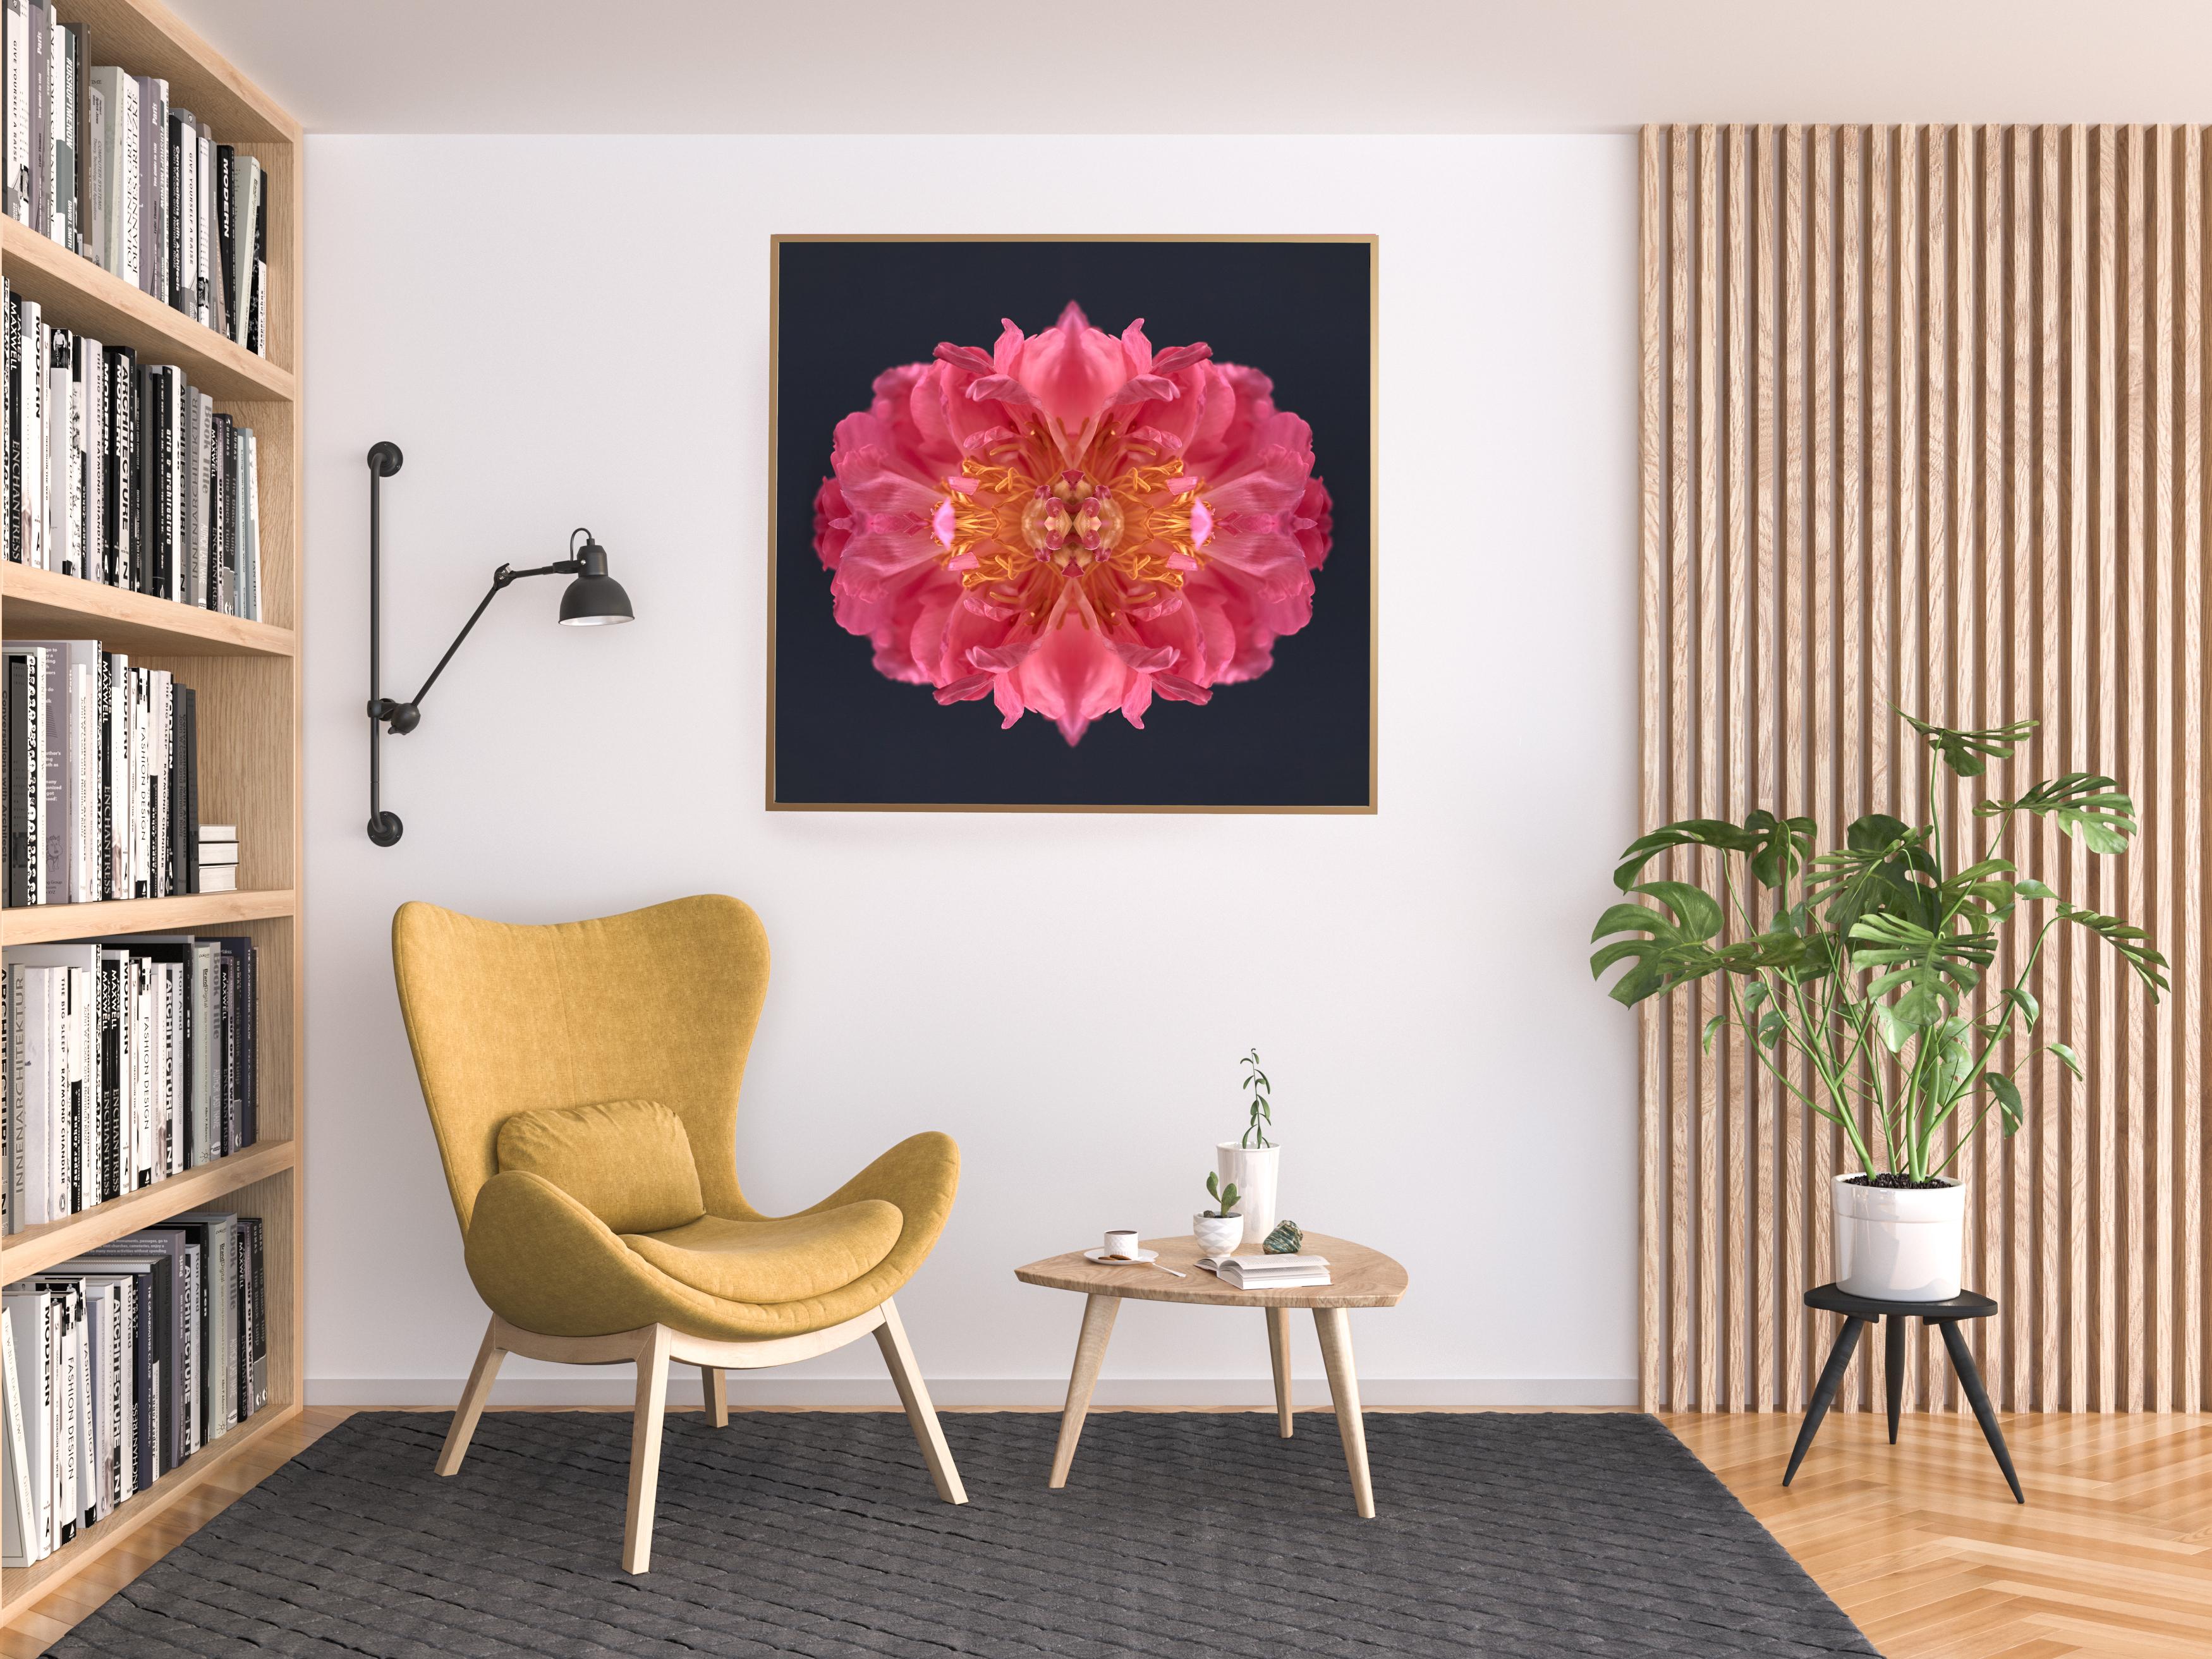 Dieser Druck zeigt die spielerische Beziehung zwischen natürlichen Formen und Pflanzen. In diesem Bild nutzt Erin die natürliche Komposition der rosa Pfingstrose und ihre eigene Collagearbeit, um mit der Blume ein hypnotisches Mandala zu schaffen.